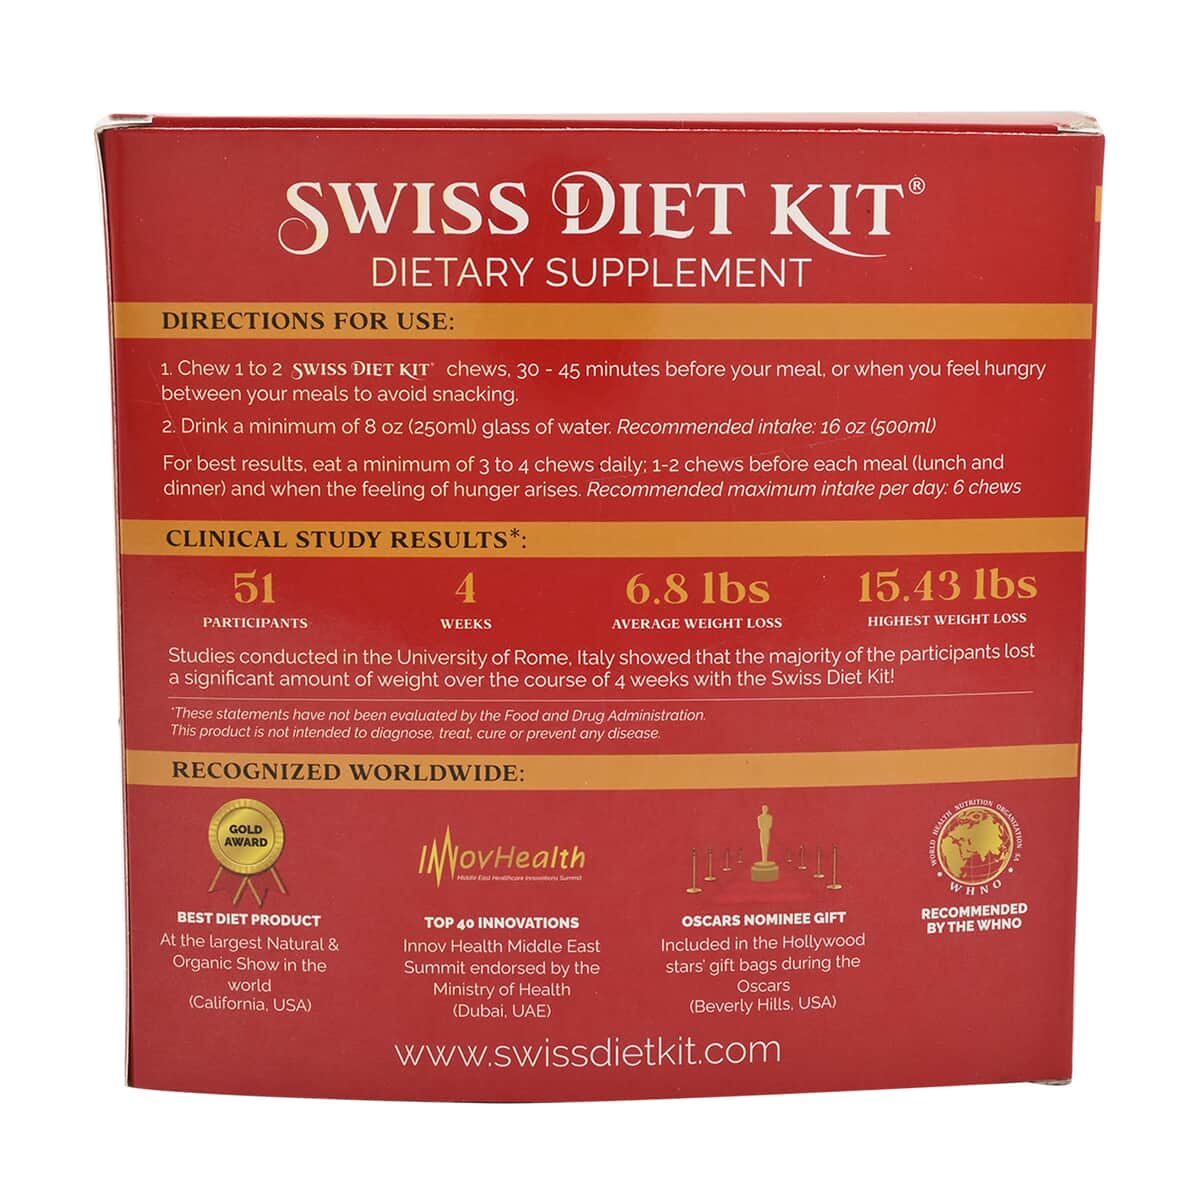 Buy Sankom Swiss Diet Kit Complete Set 4-Week Set - Peach at ShopLC.